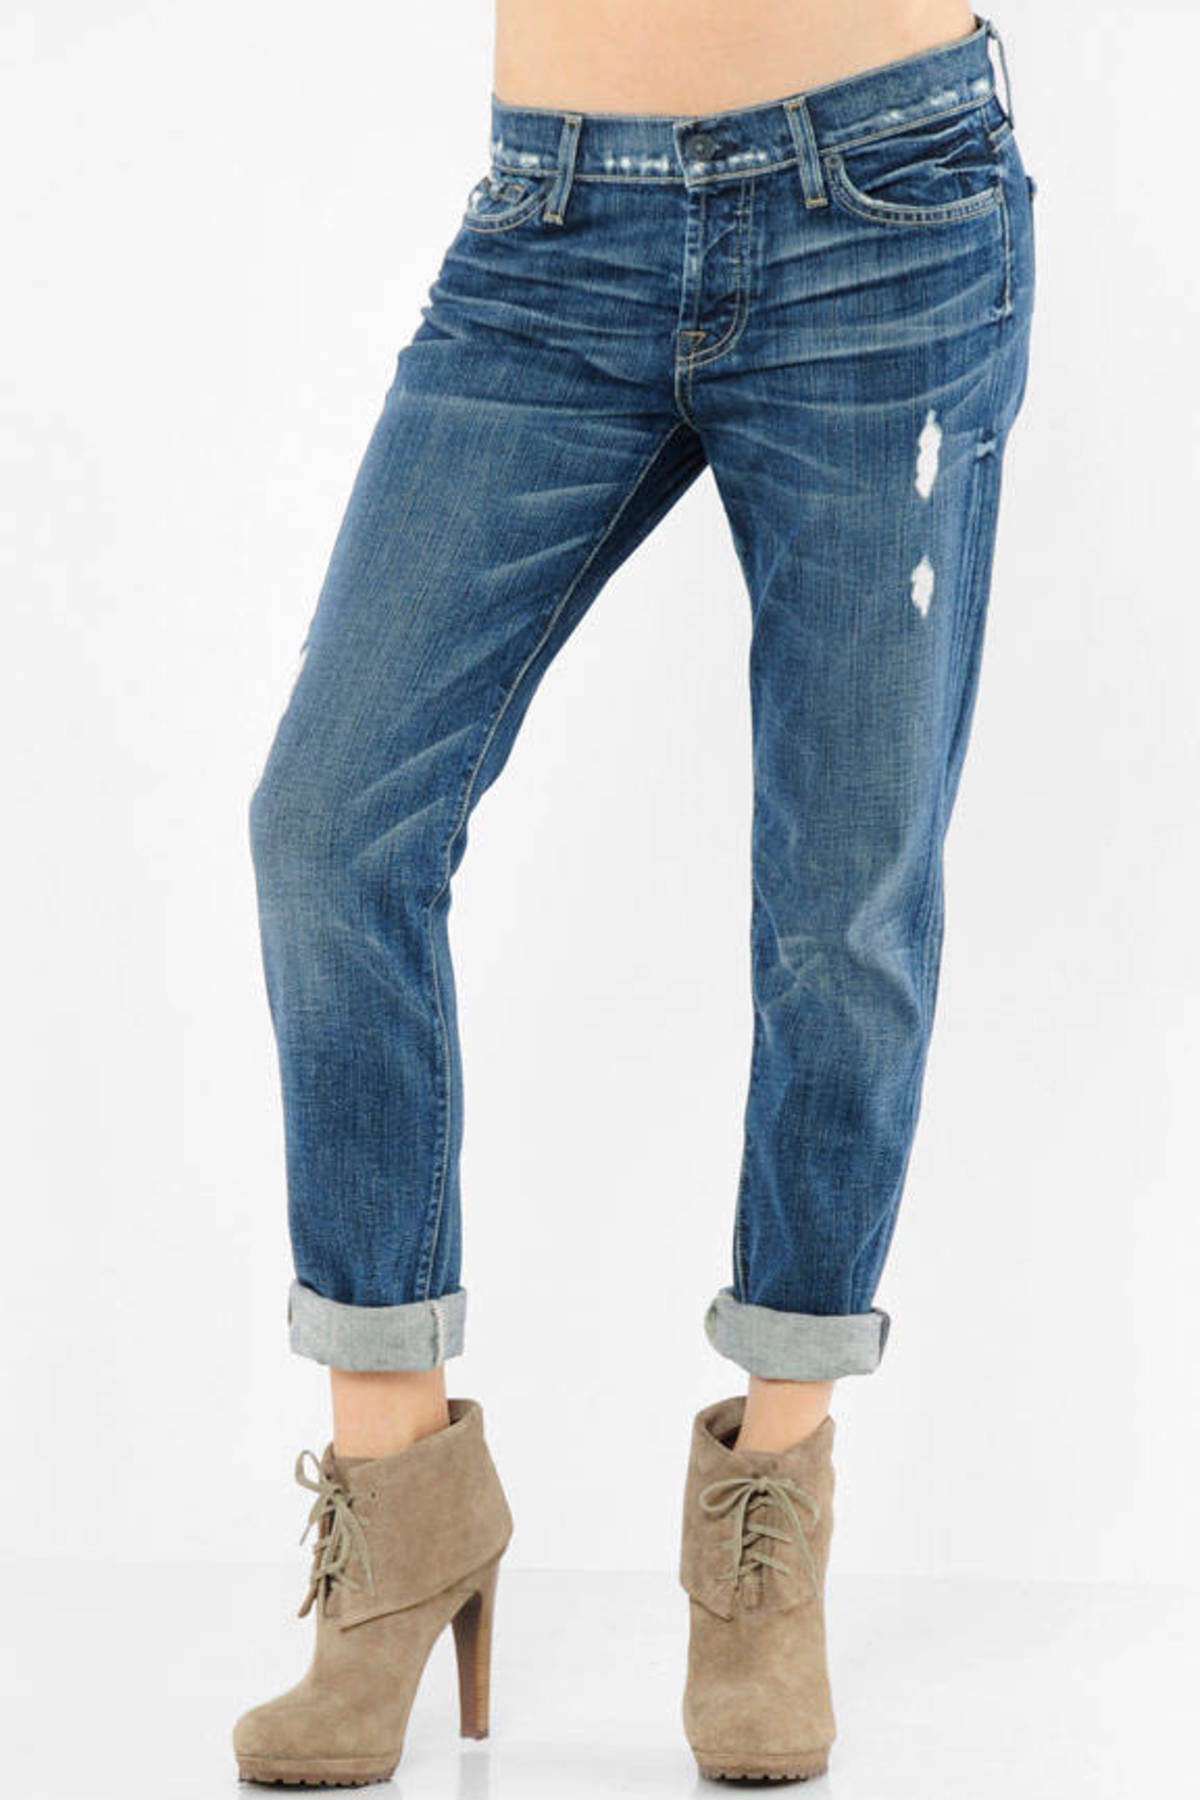 Josefina Skinny Jeans in Vintage California - $99 | Tobi US